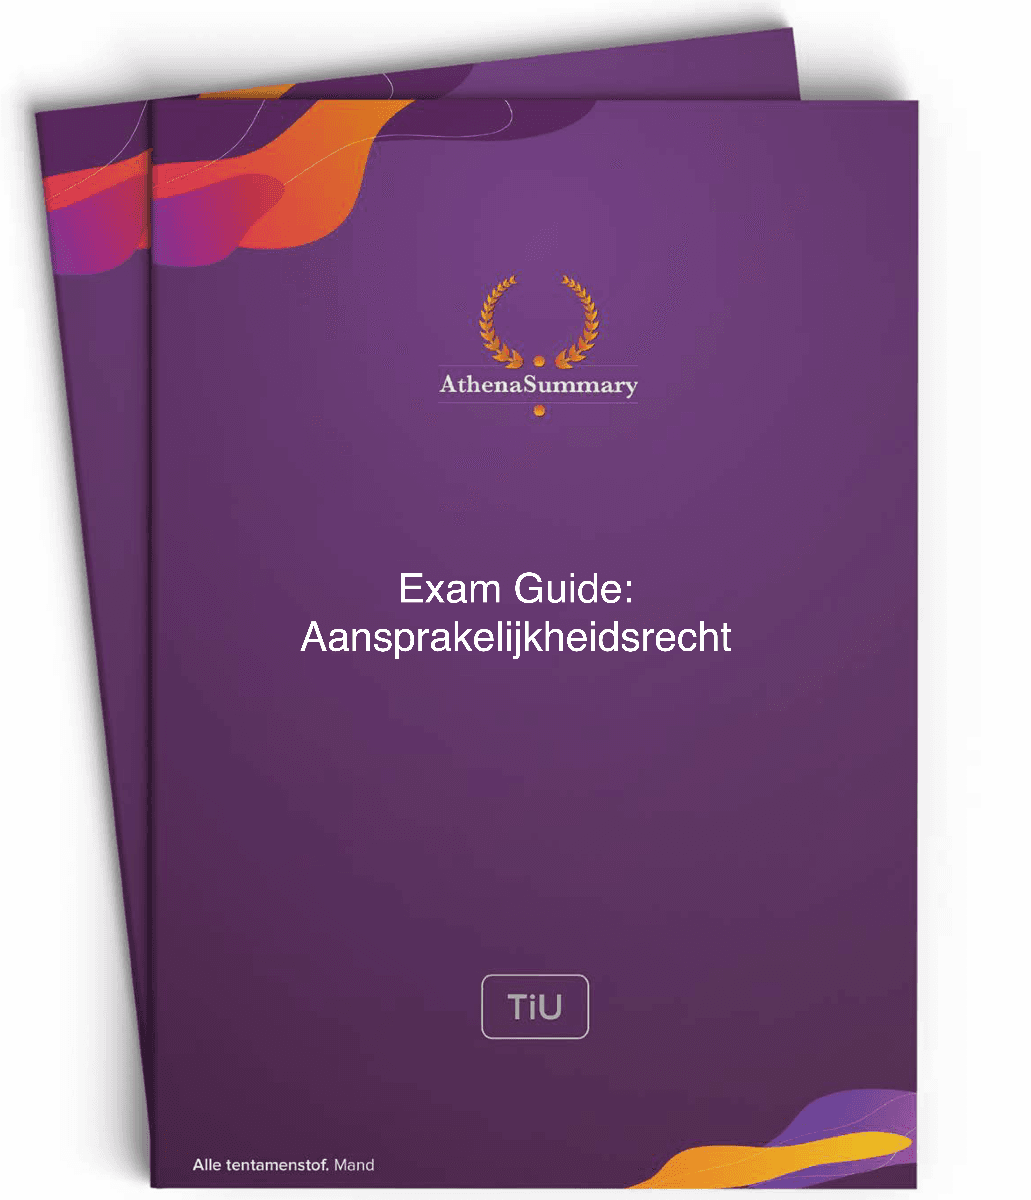 Exam Guide voor Aansprakelijkheidsrecht